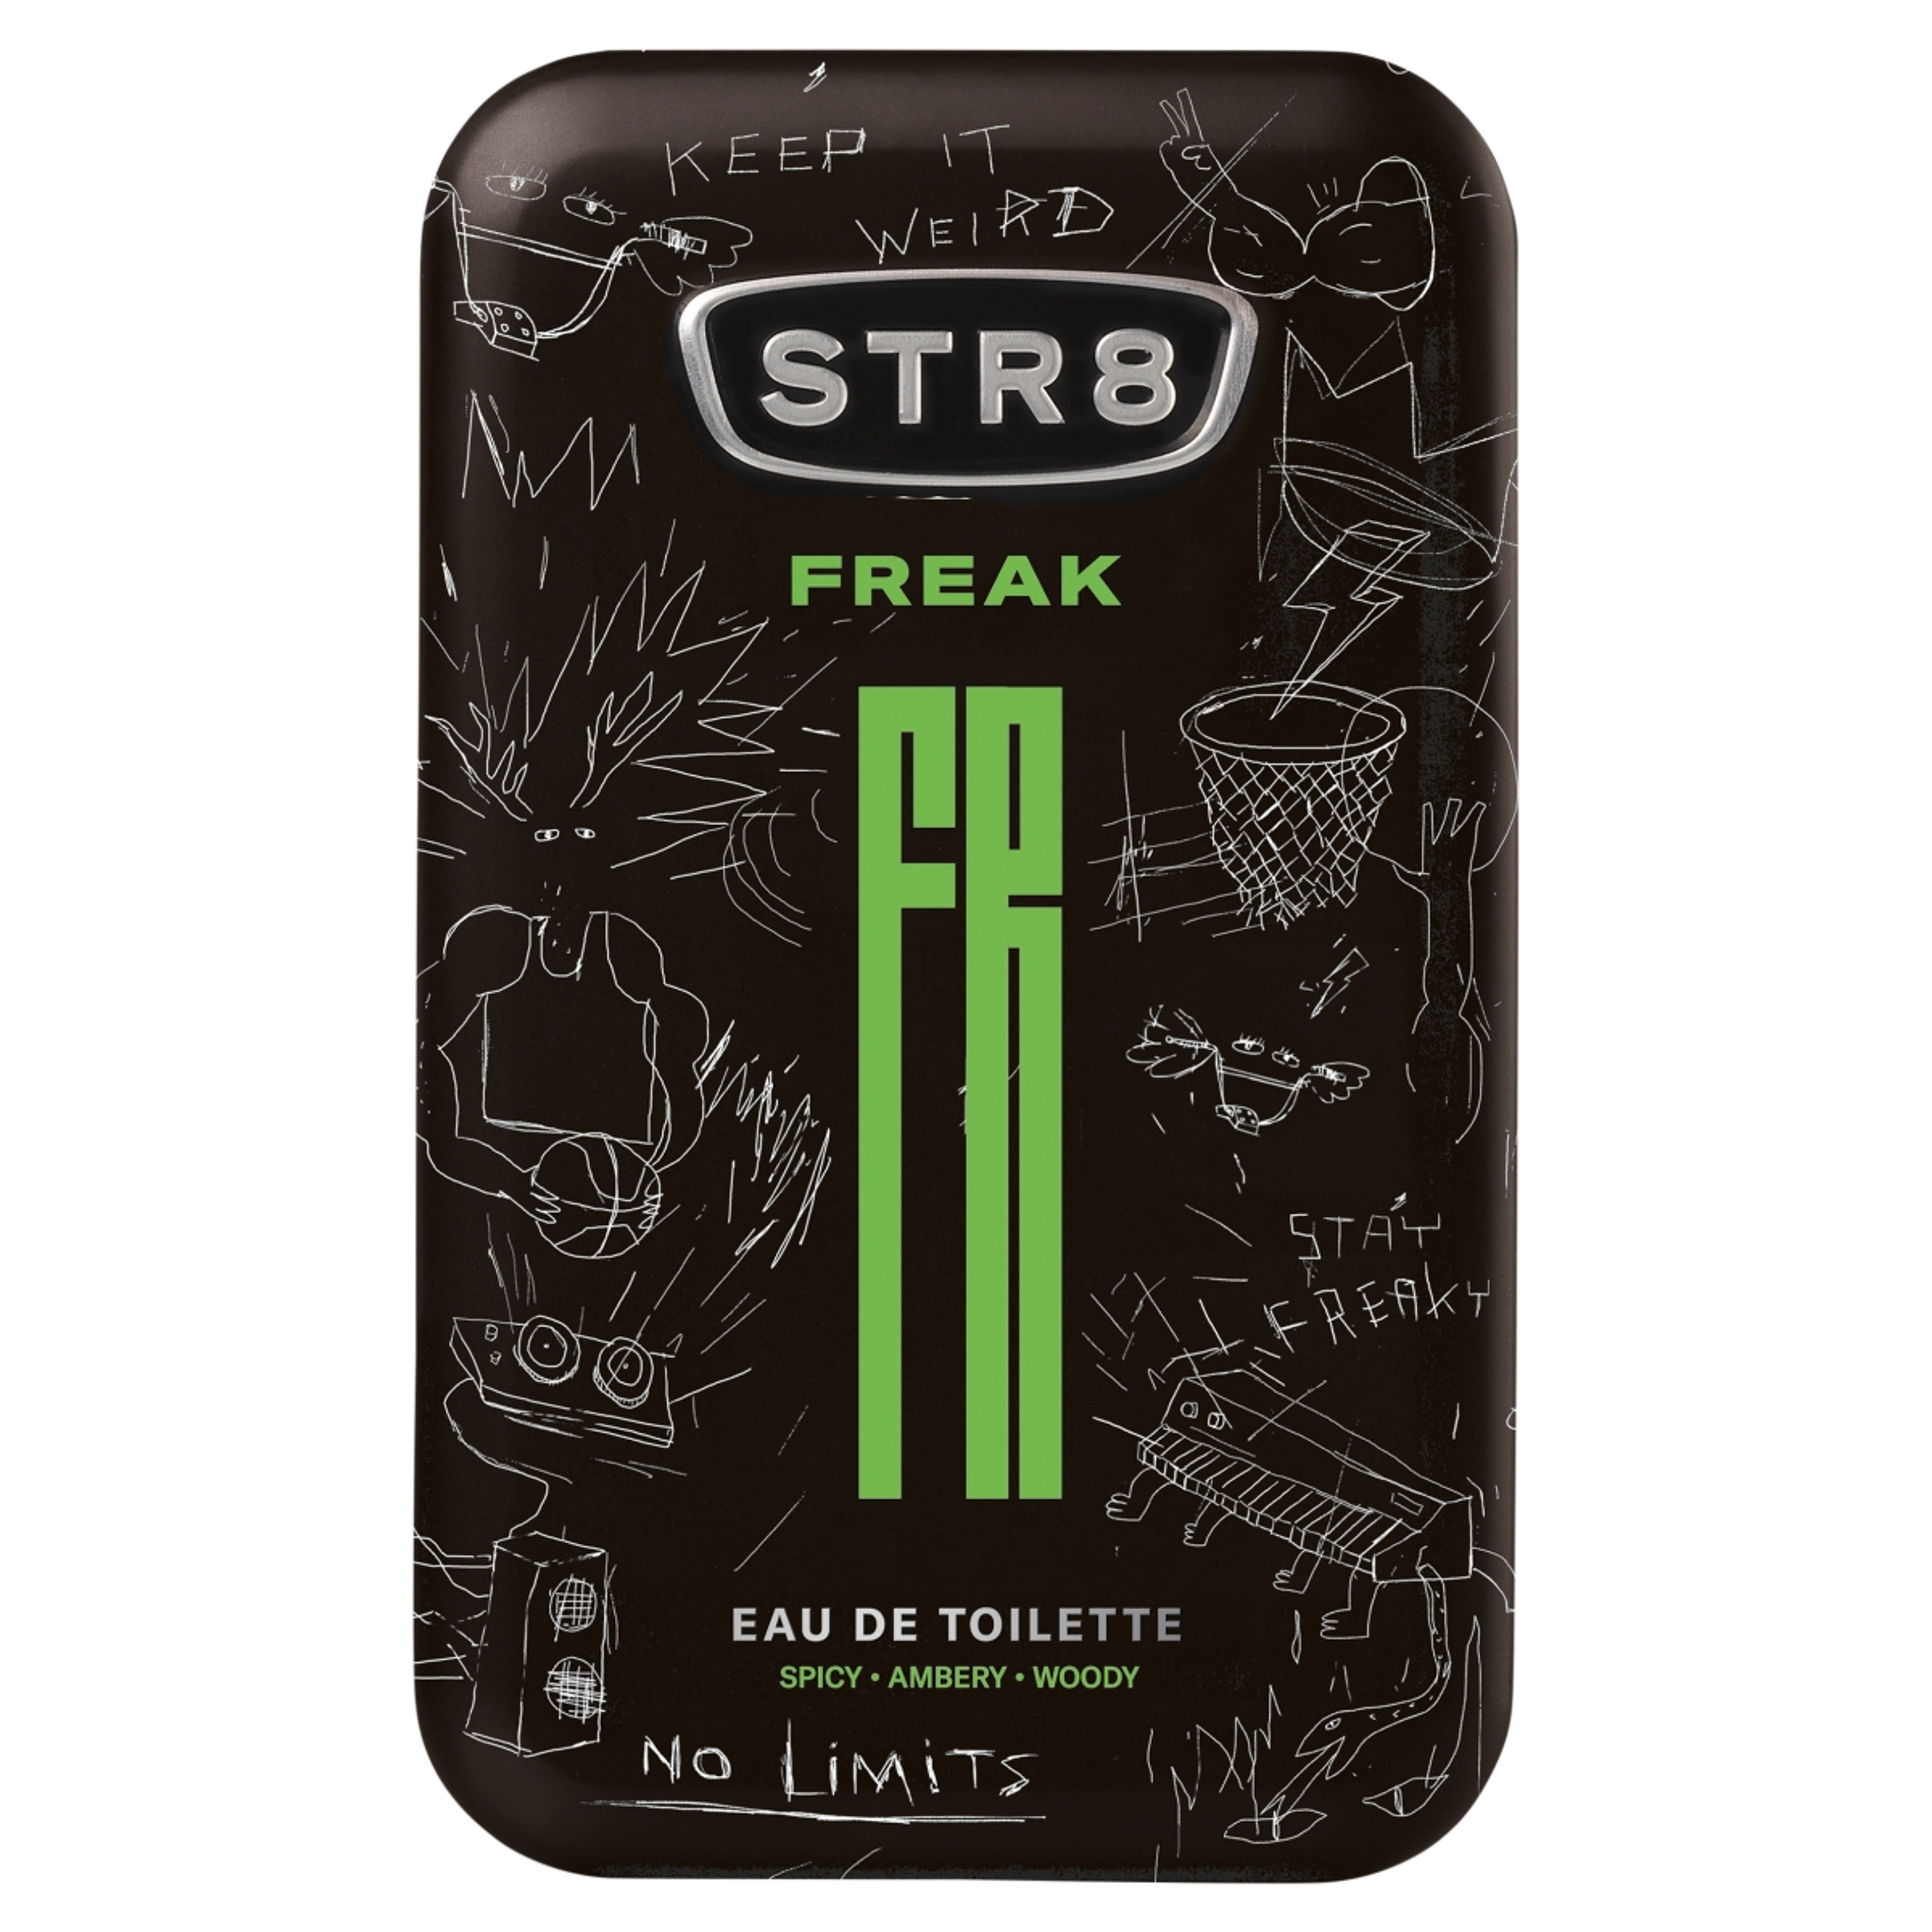 STR8 FR34K eau de toilette - 100 ml-1